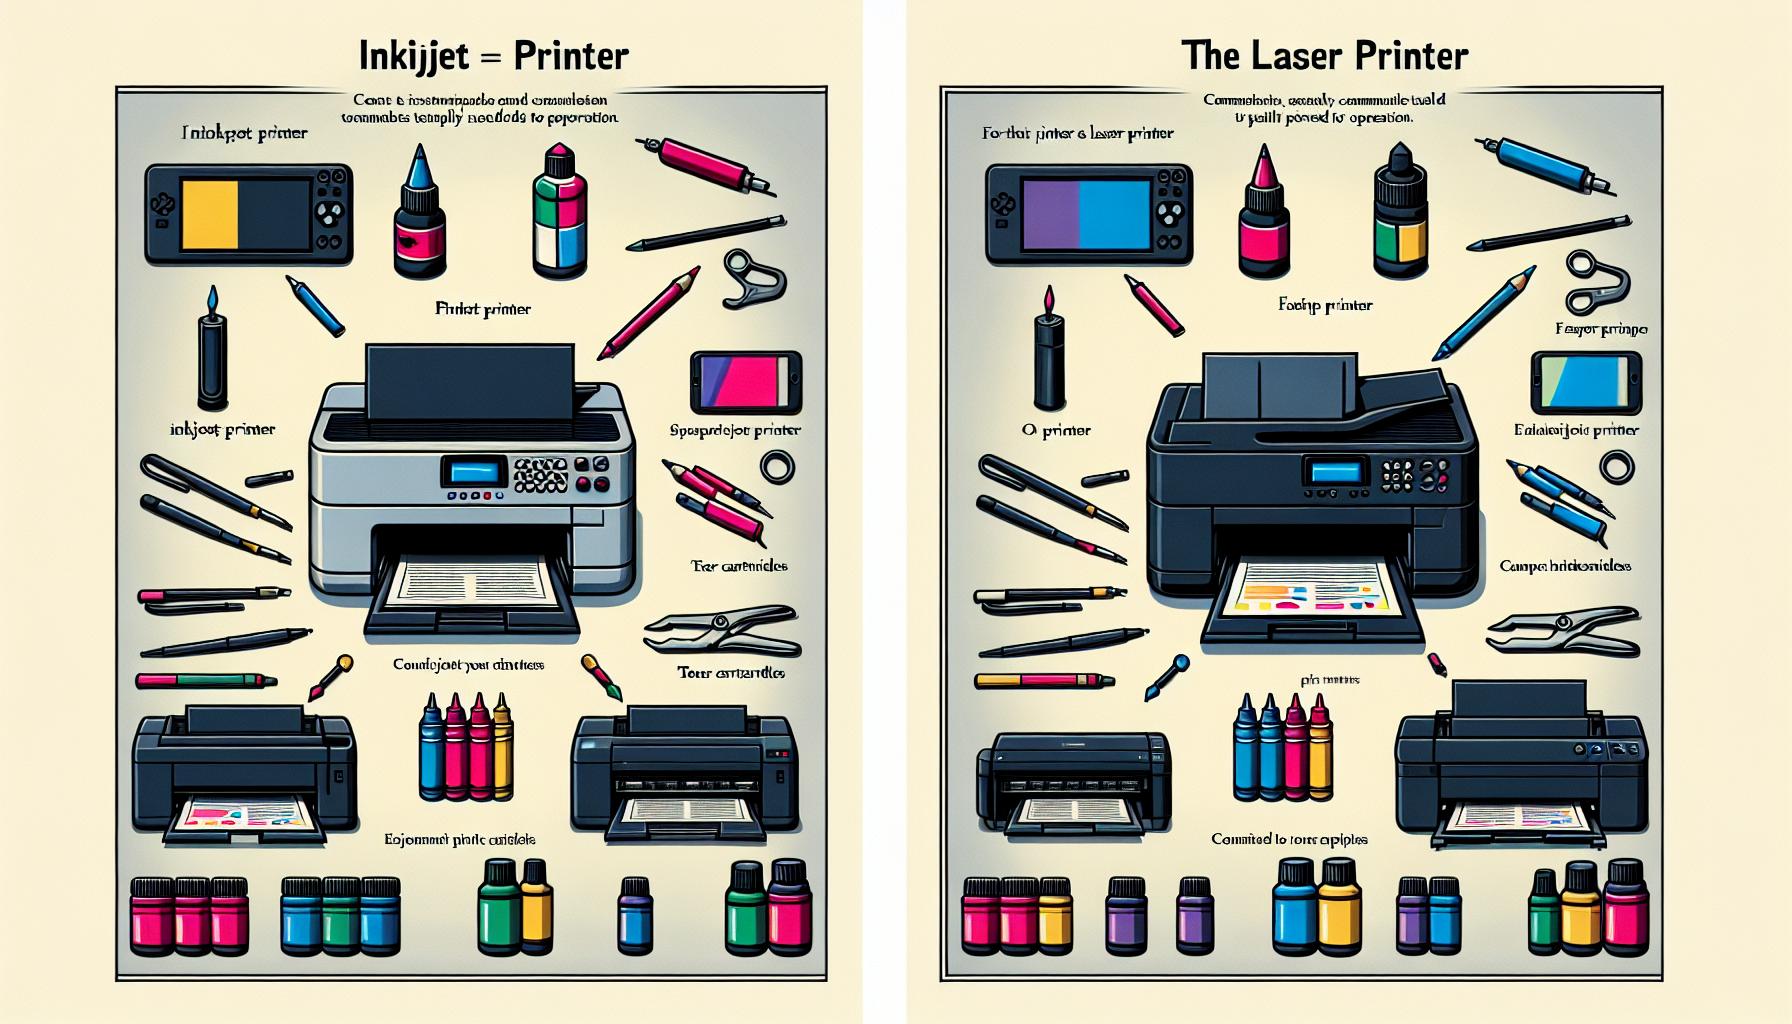 grafika: materialy eksploatacyjne do drukarek: jak wybrac najlepsze